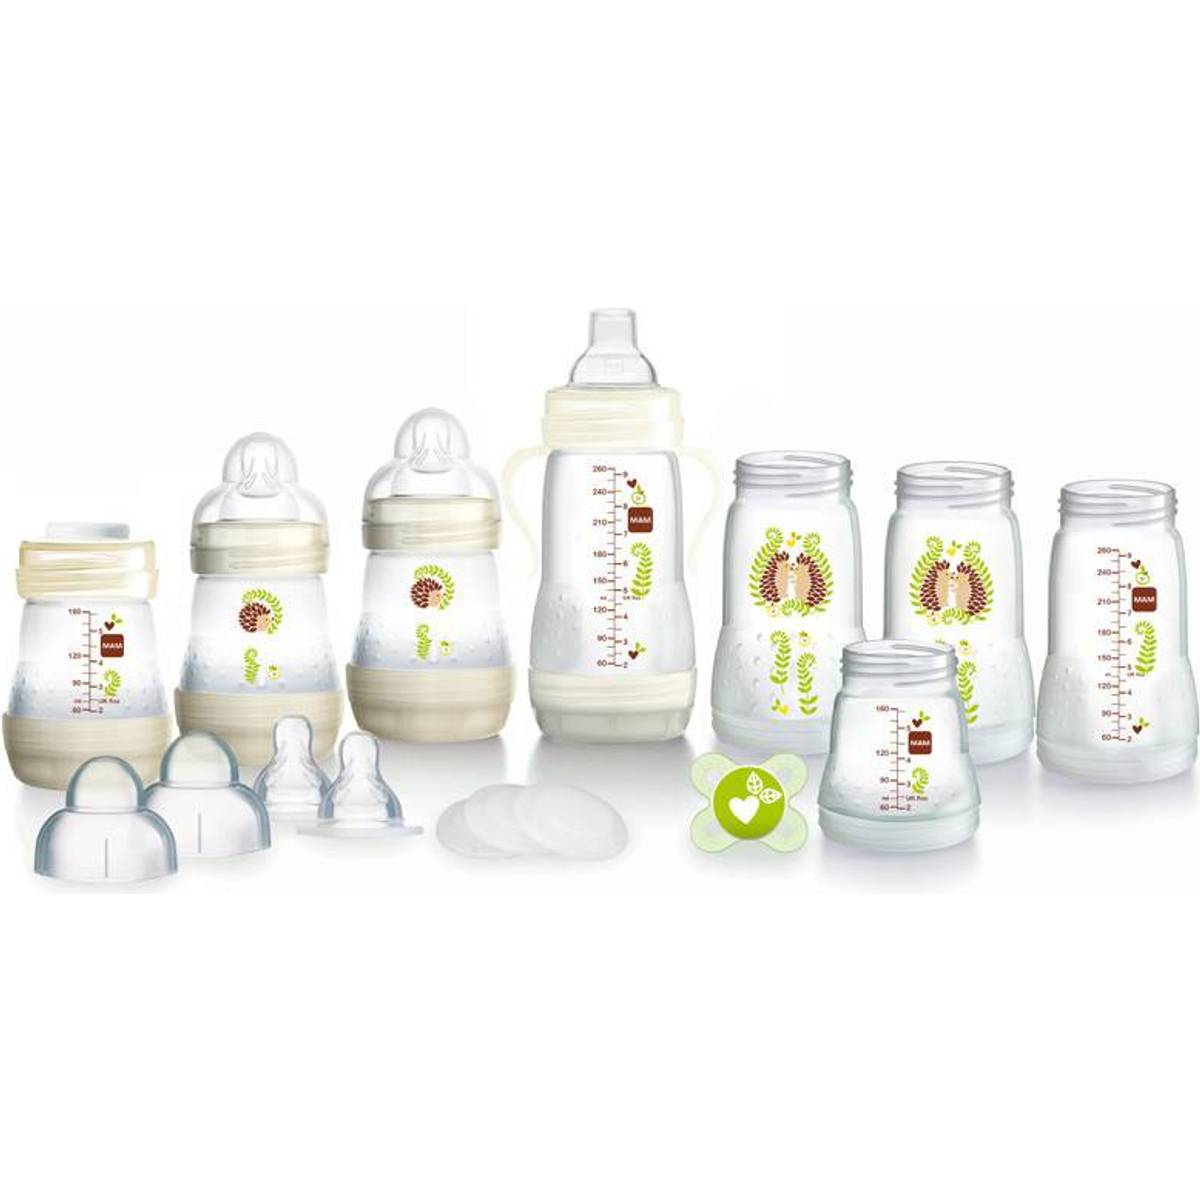 Babyflaske fodringssæt (15 modeller) hos PriceRunner • Se priser nu »